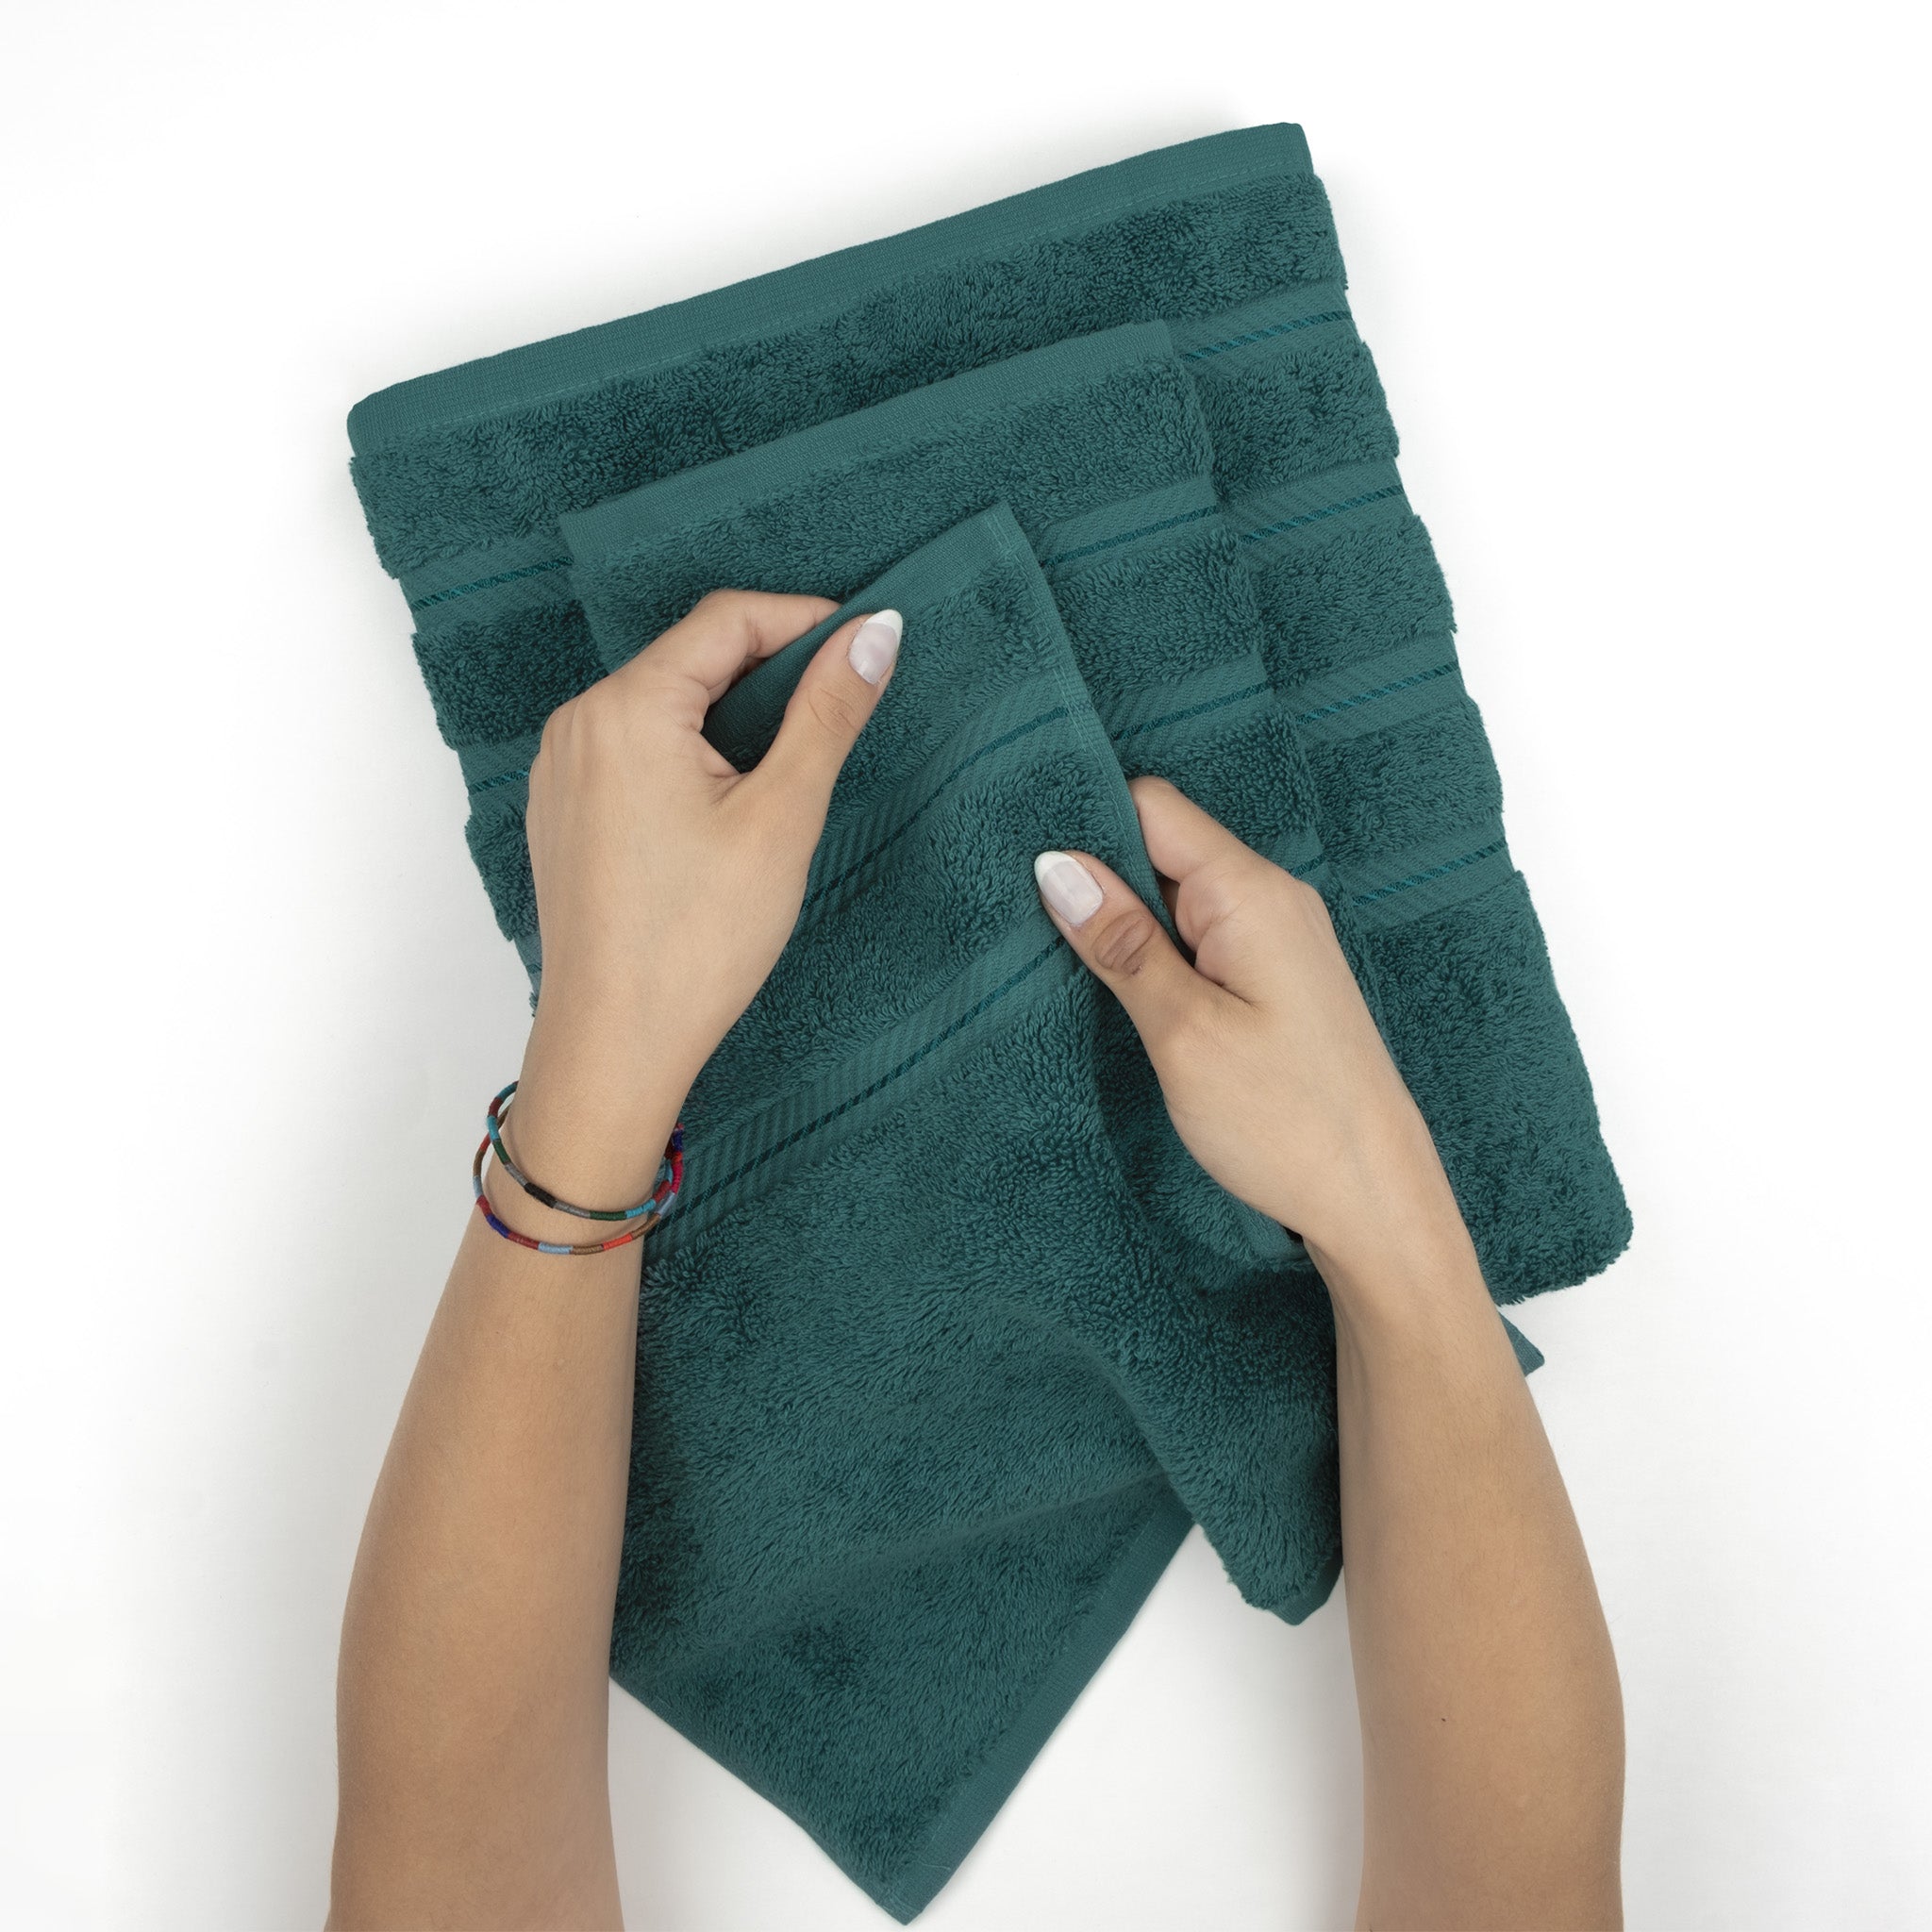 American Soft Linen 100% Turkish Cotton 6 Piece Towel Set Wholesale colonial-blue-5